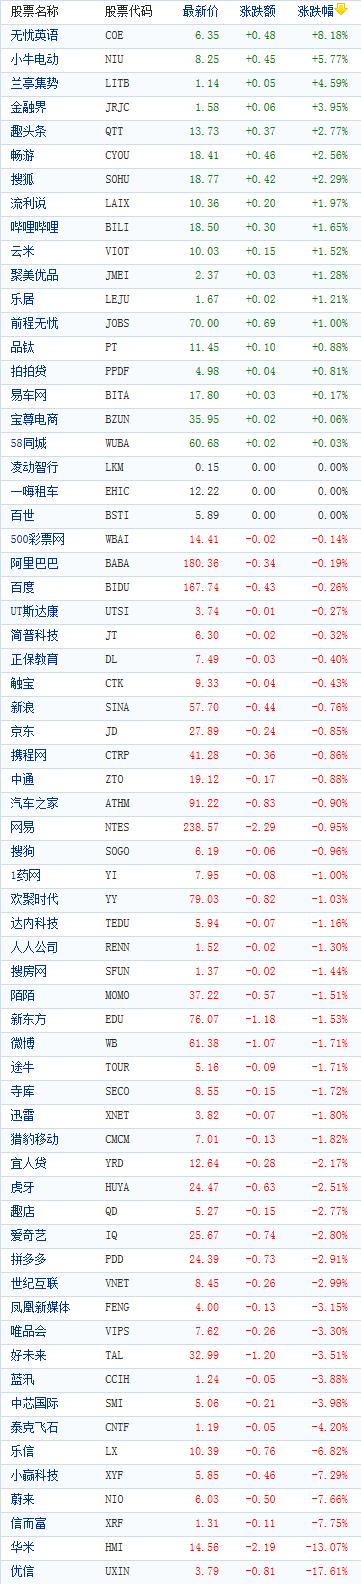 美股收盘涨跌互现 中国概念股周四收盘多数下跌